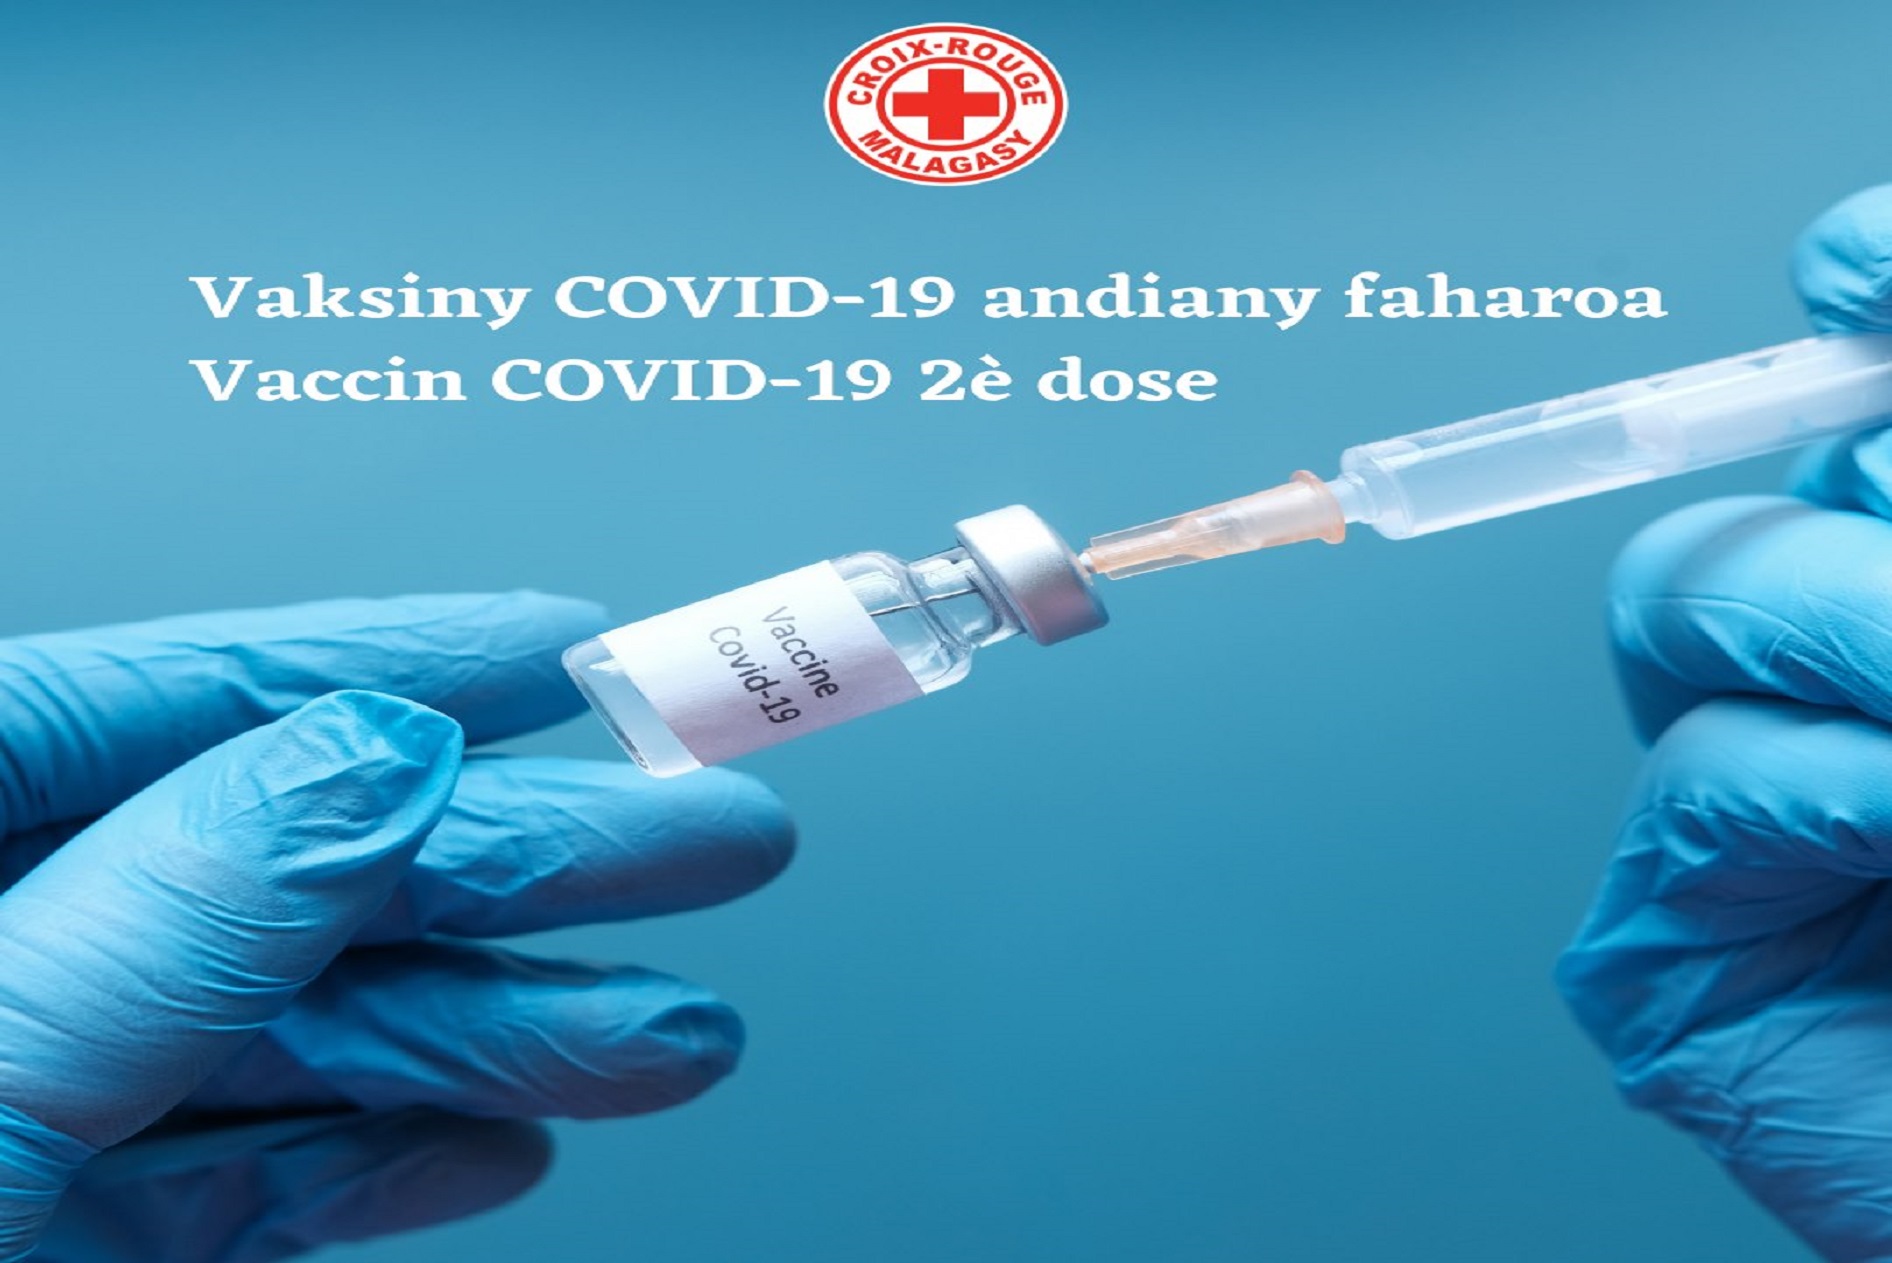 Vaksiny miady amin'ny Covid-19 andiany faharoa